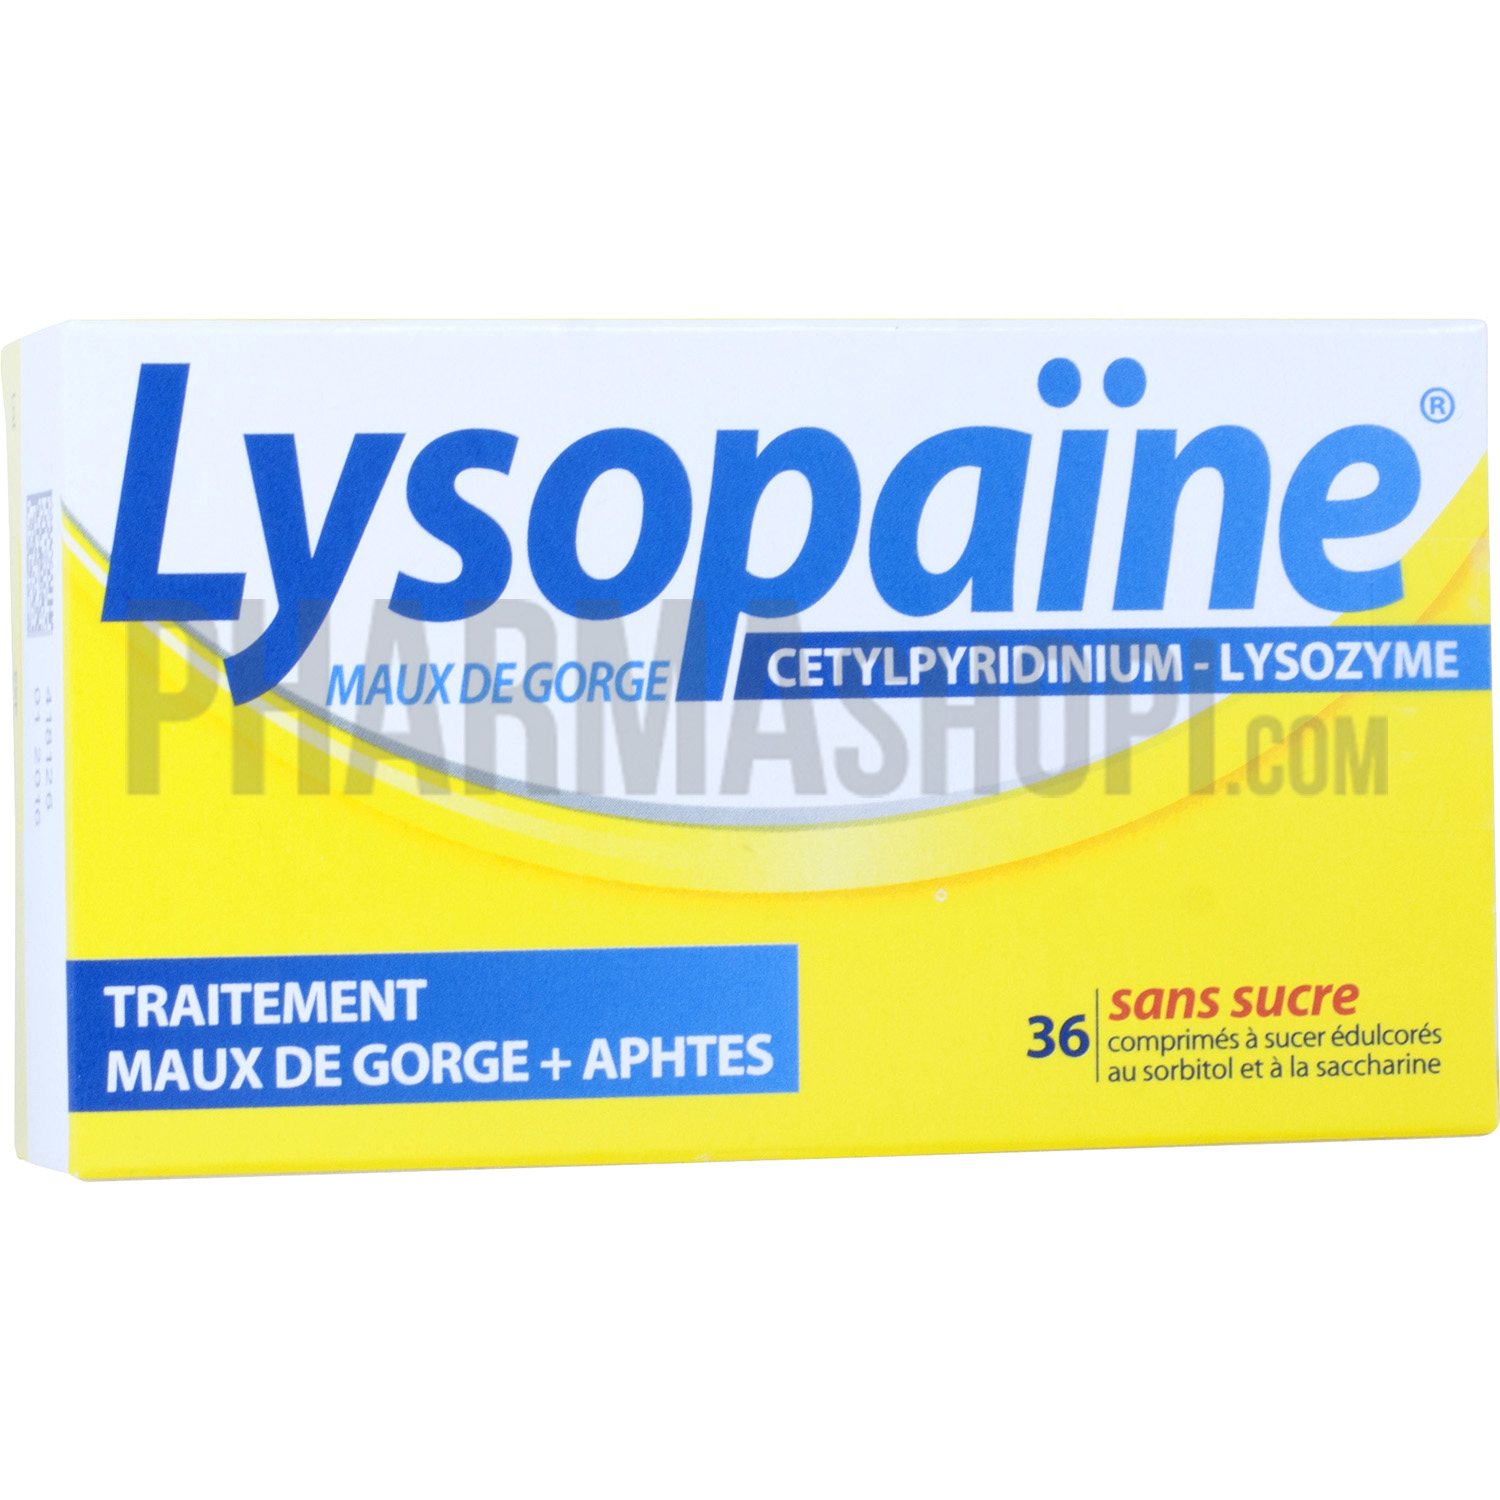 Lysopaïne Ambroxol 20mg Maux de Gorge Aigus 18 pastilles